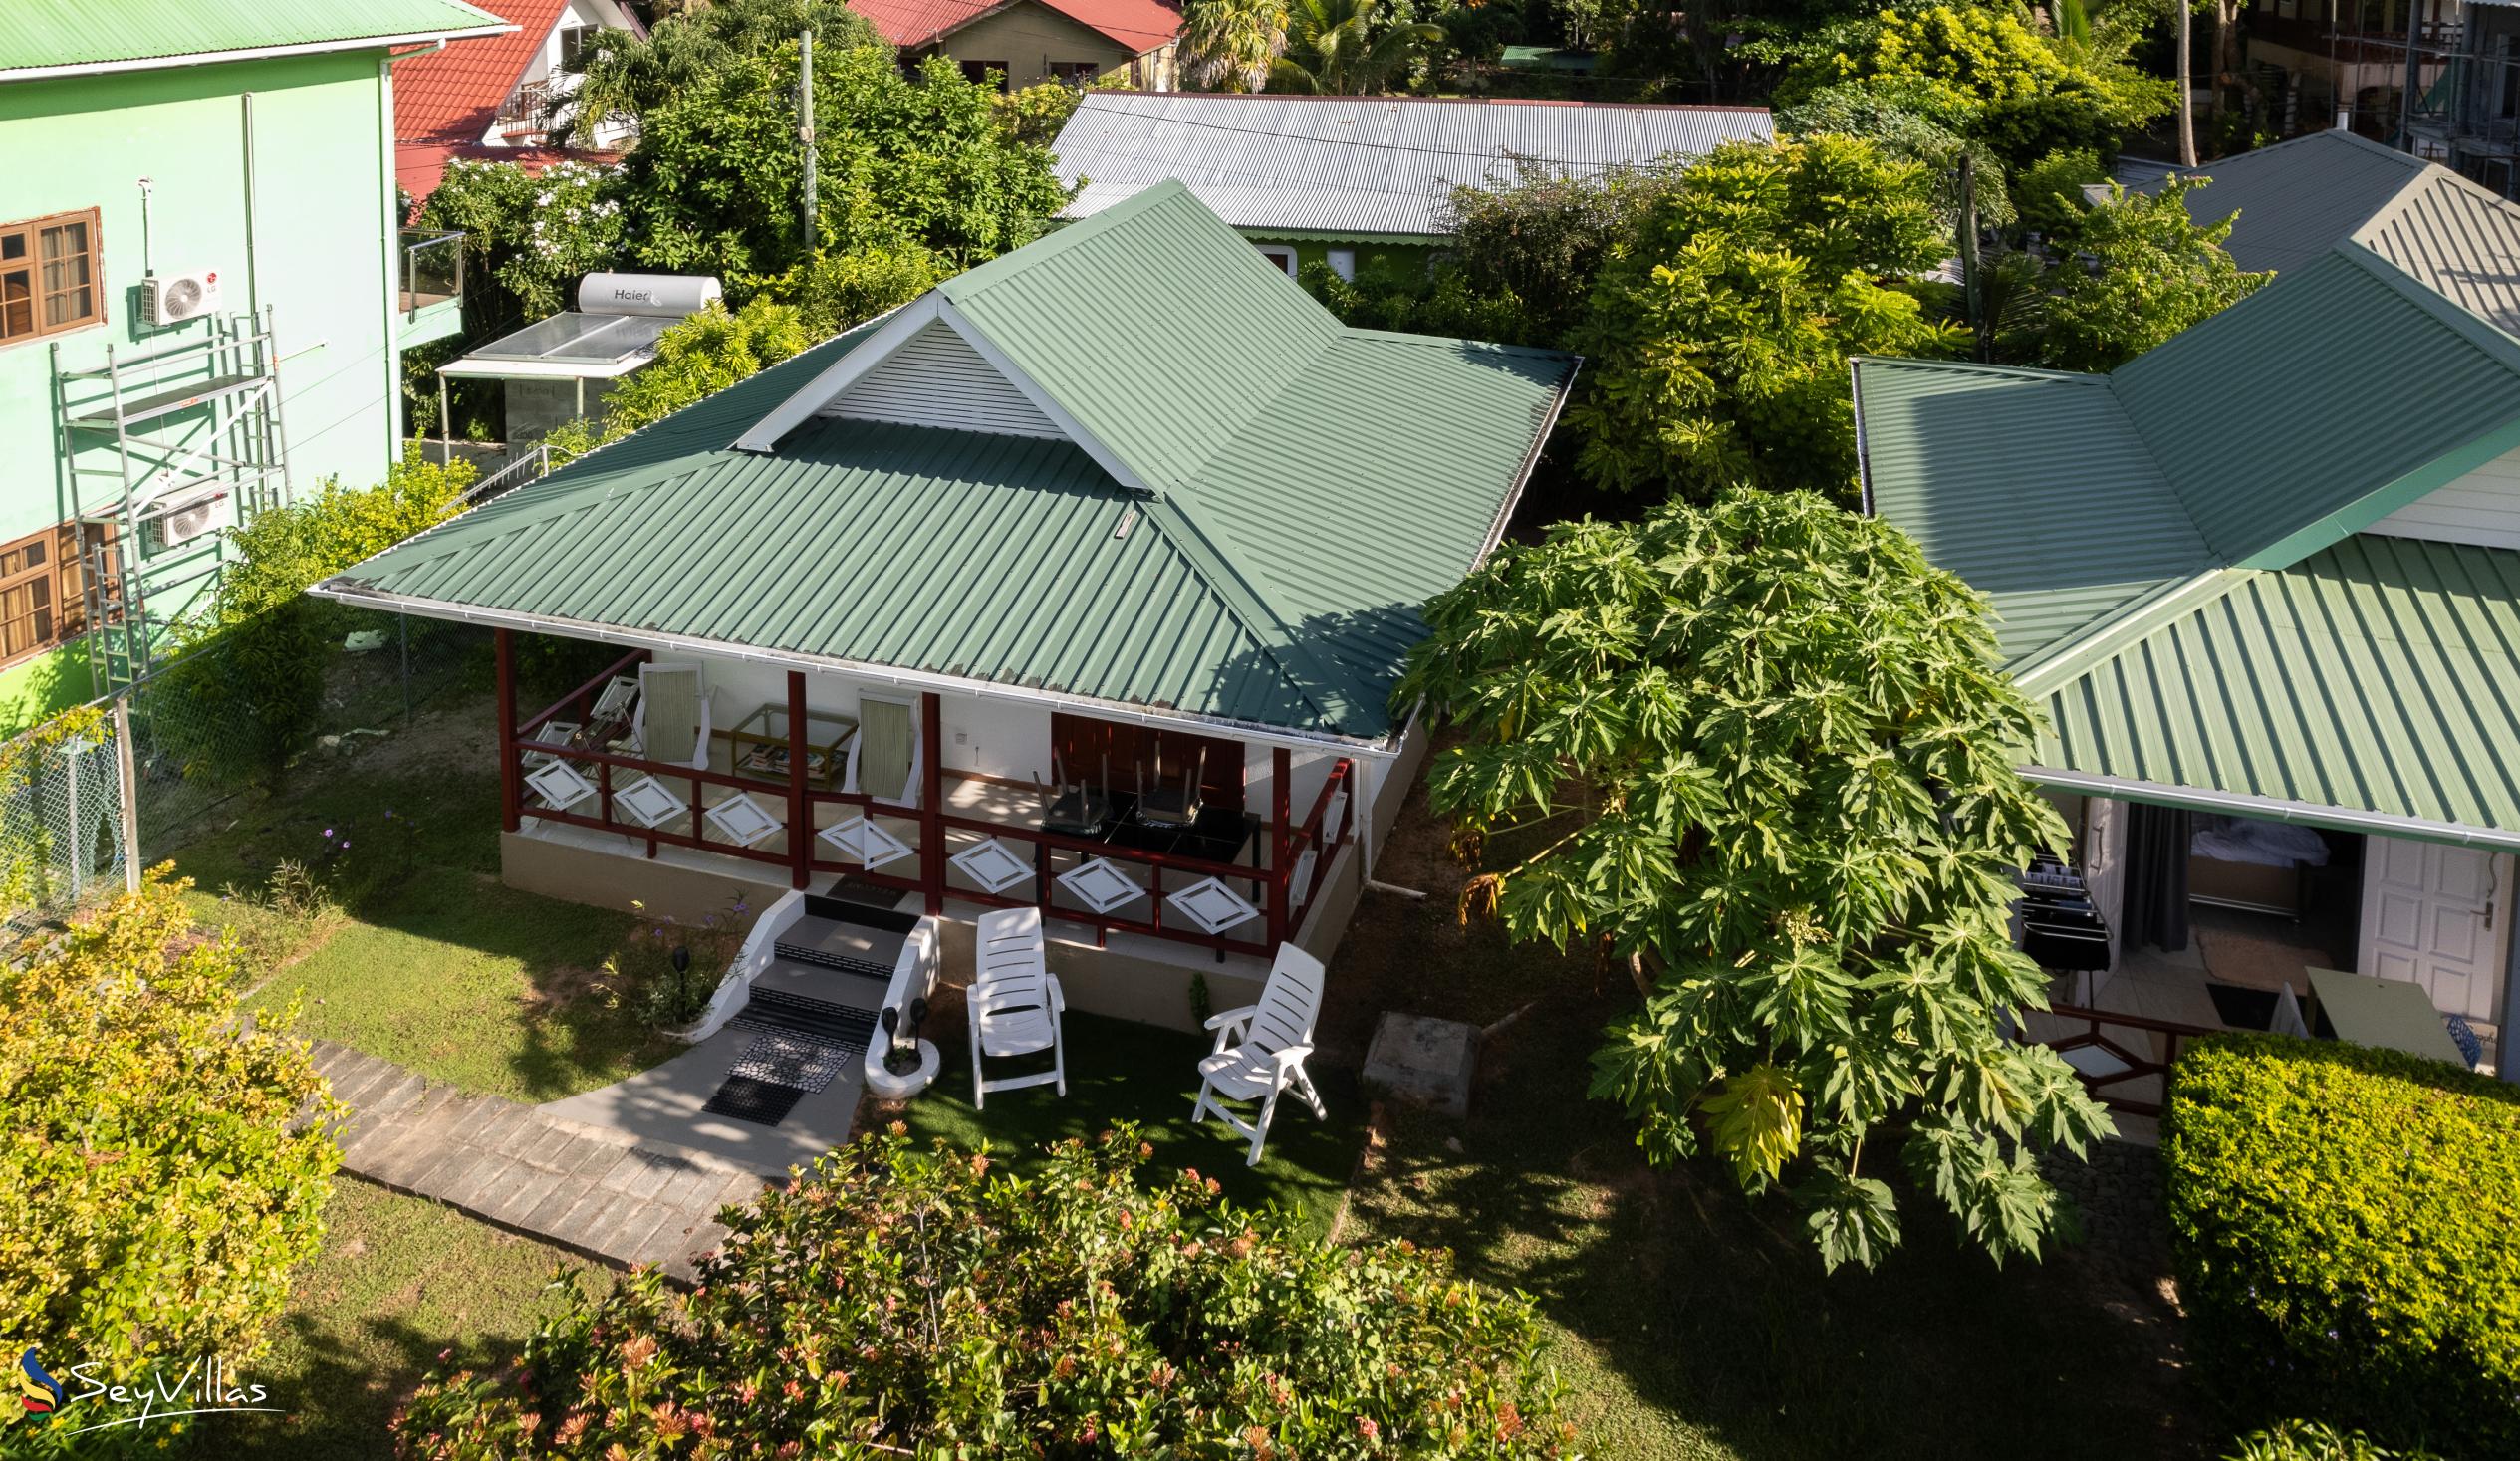 Photo 13: Agnes Cottage - Outdoor area - La Digue (Seychelles)